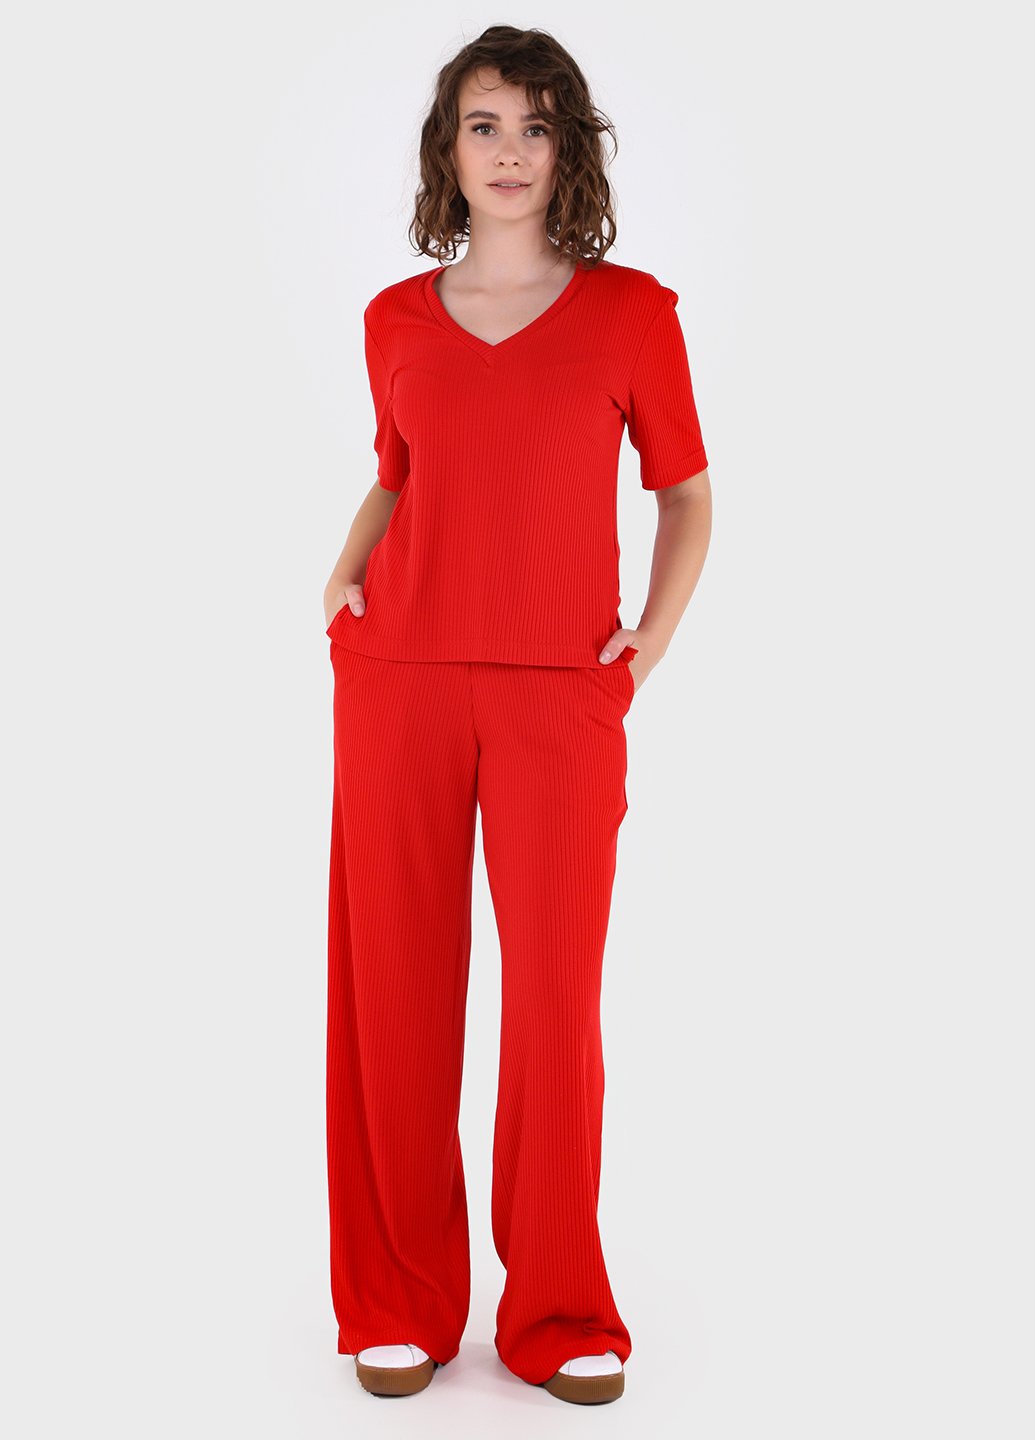 Купить Костюм женский в рубчик красного цвета Merlini Аликанте 100000101, размер 42-44 в интернет-магазине